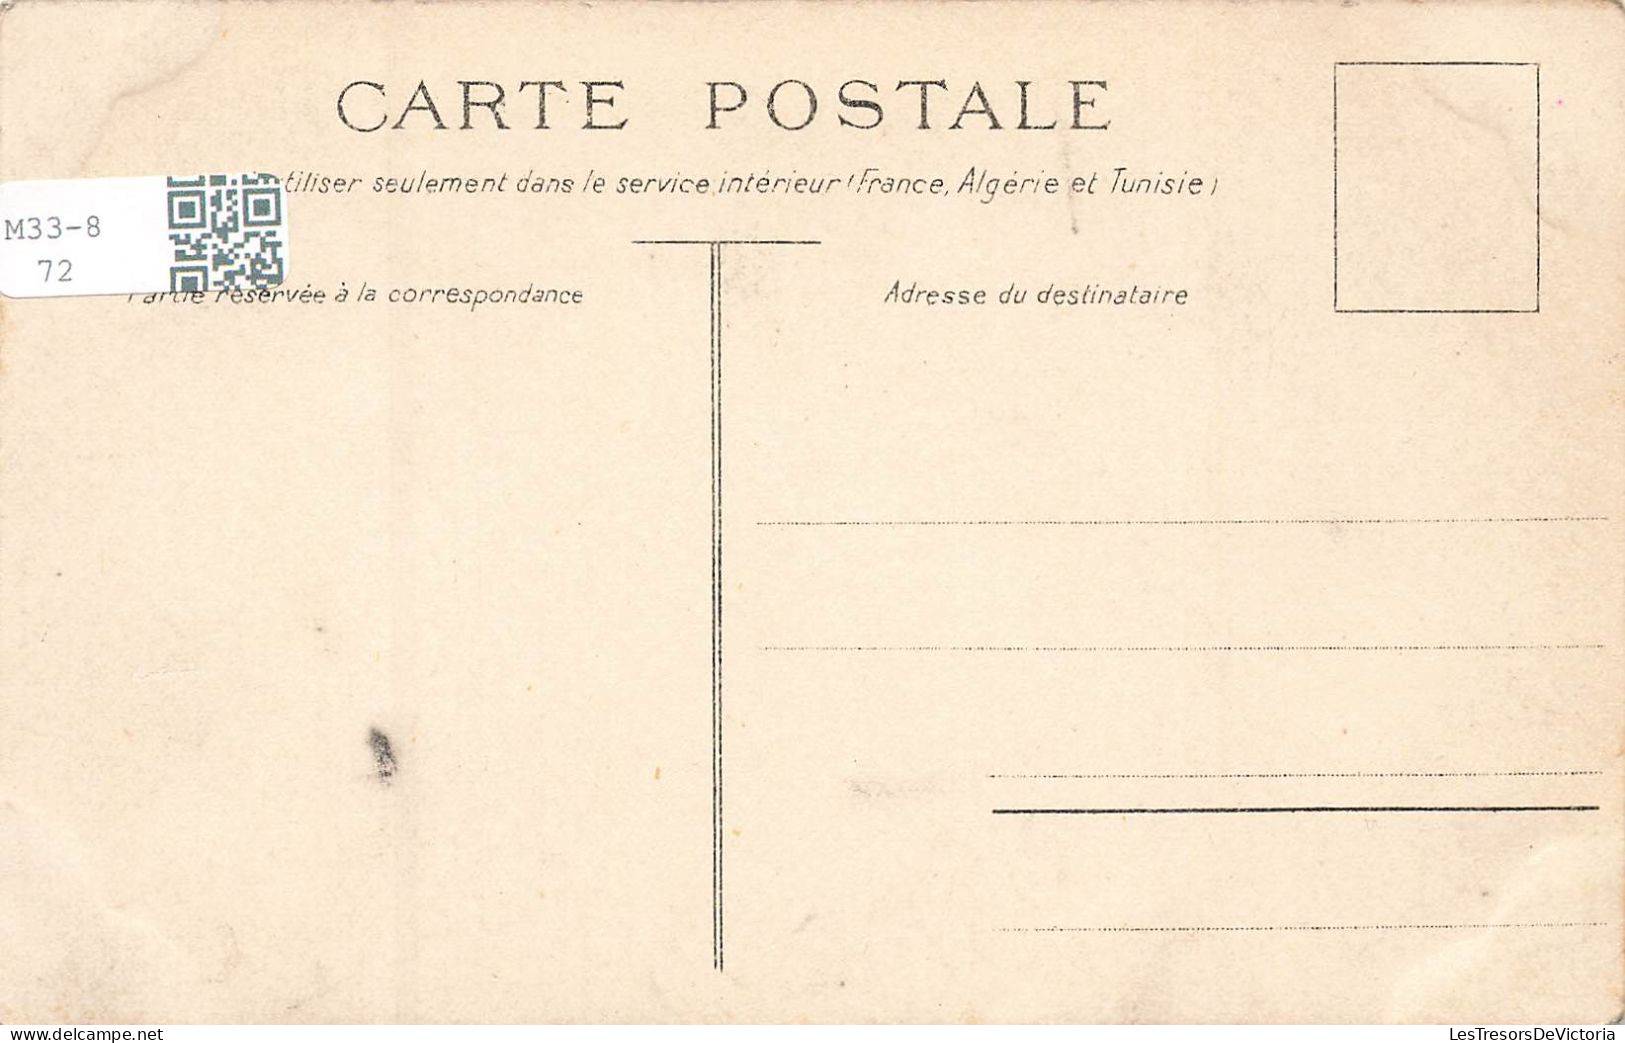 FOLKLORE - Personnage - Marguerite -Tourniquet - Femme En Tenue Traditionnelle - Carte Postale Ancienne - People